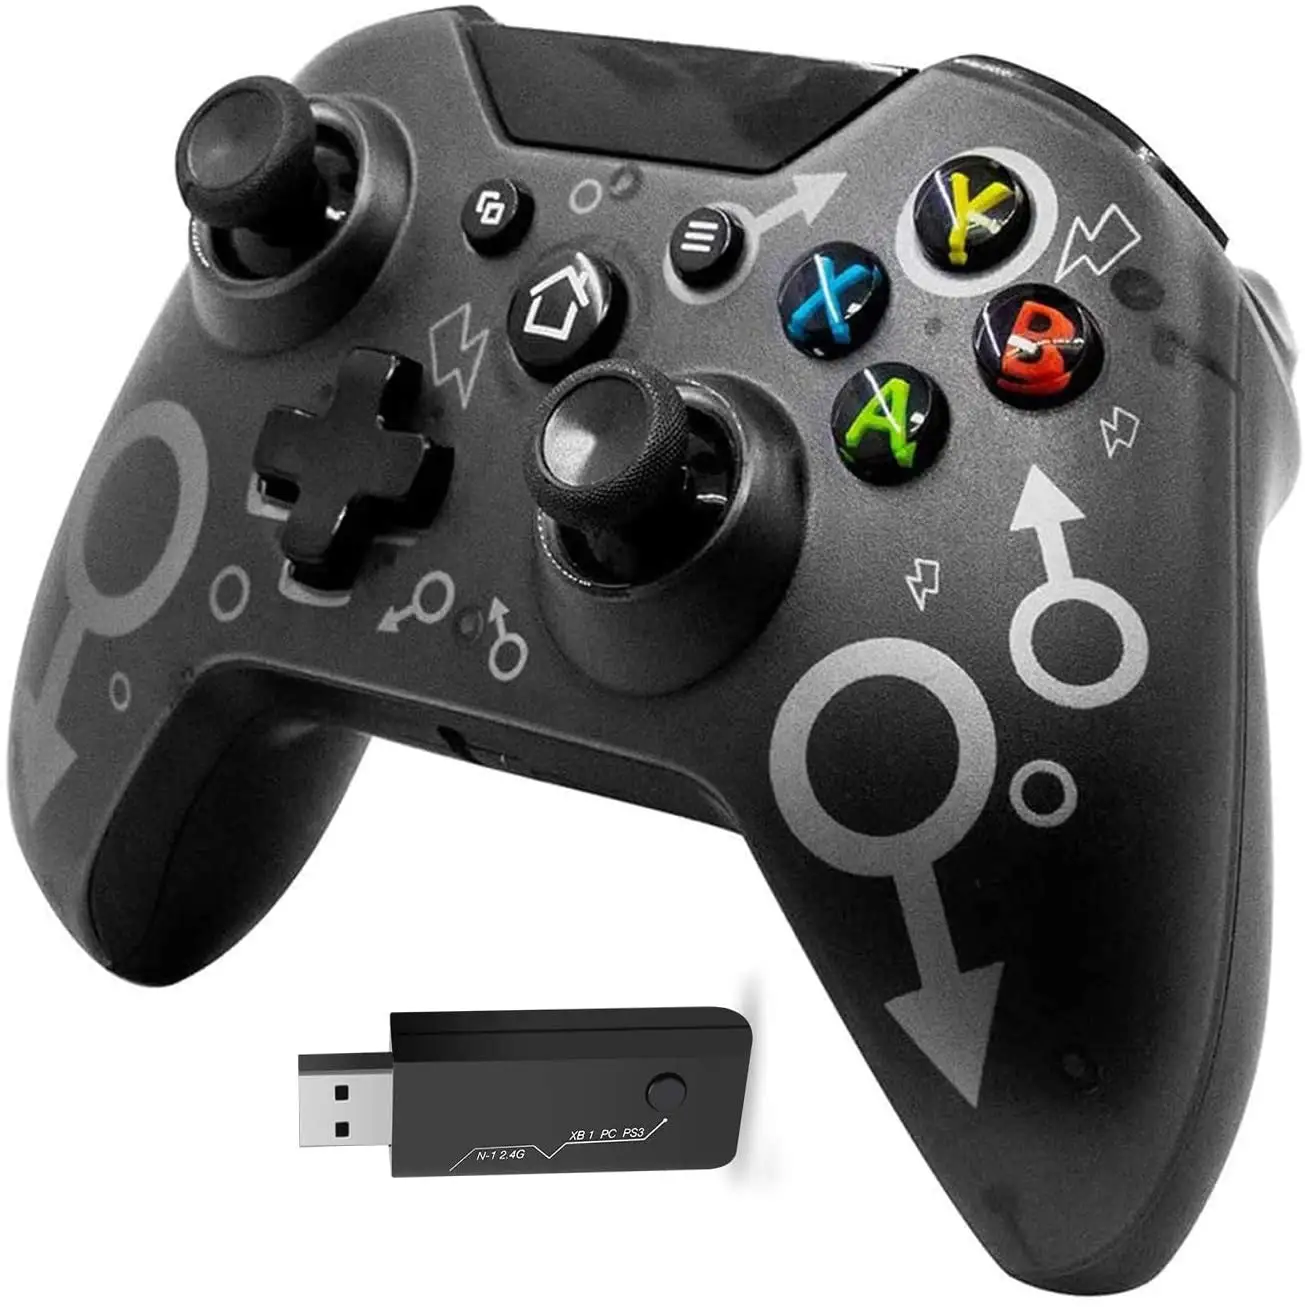 2.4GHZ Wireless Controller di Doppia Vibrazione Gamepad per Xbox One/One S/One X/PS3/Windows PC 7/8/8.1/10